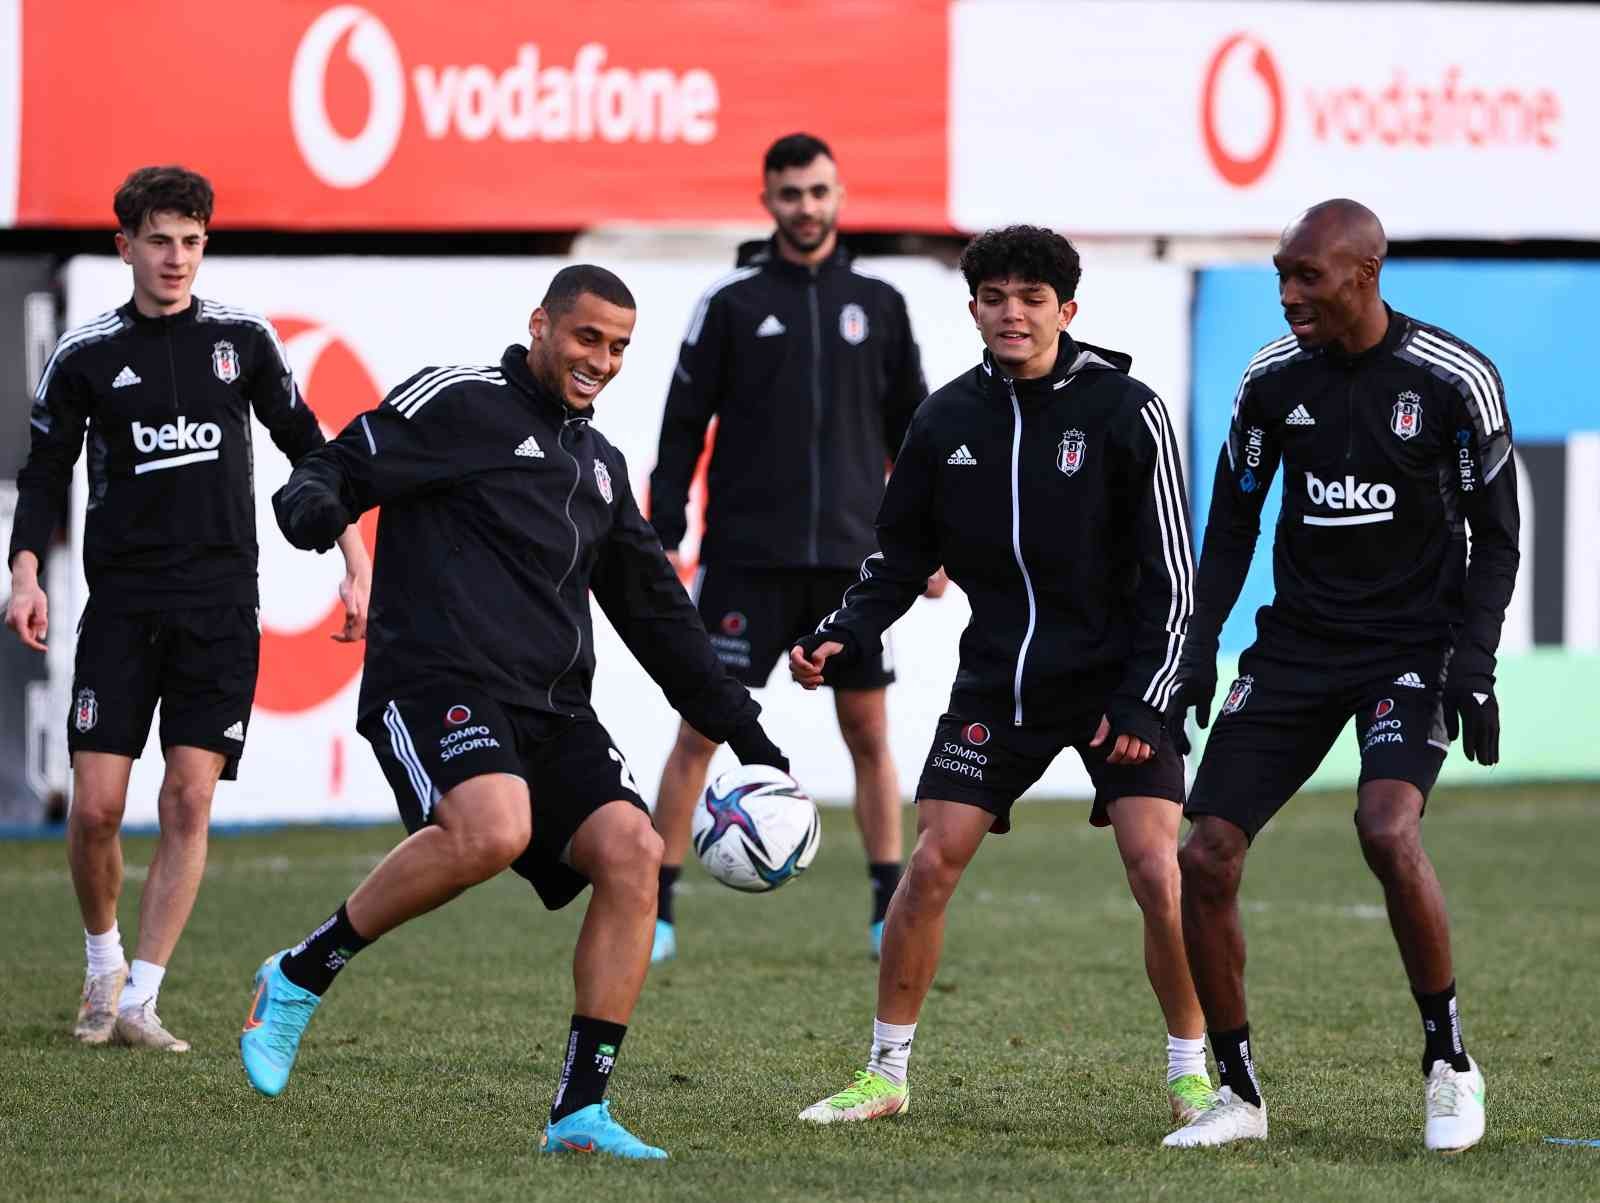 Beşiktaş, Sivasspor maçı hazırlıklarına başladı #istanbul